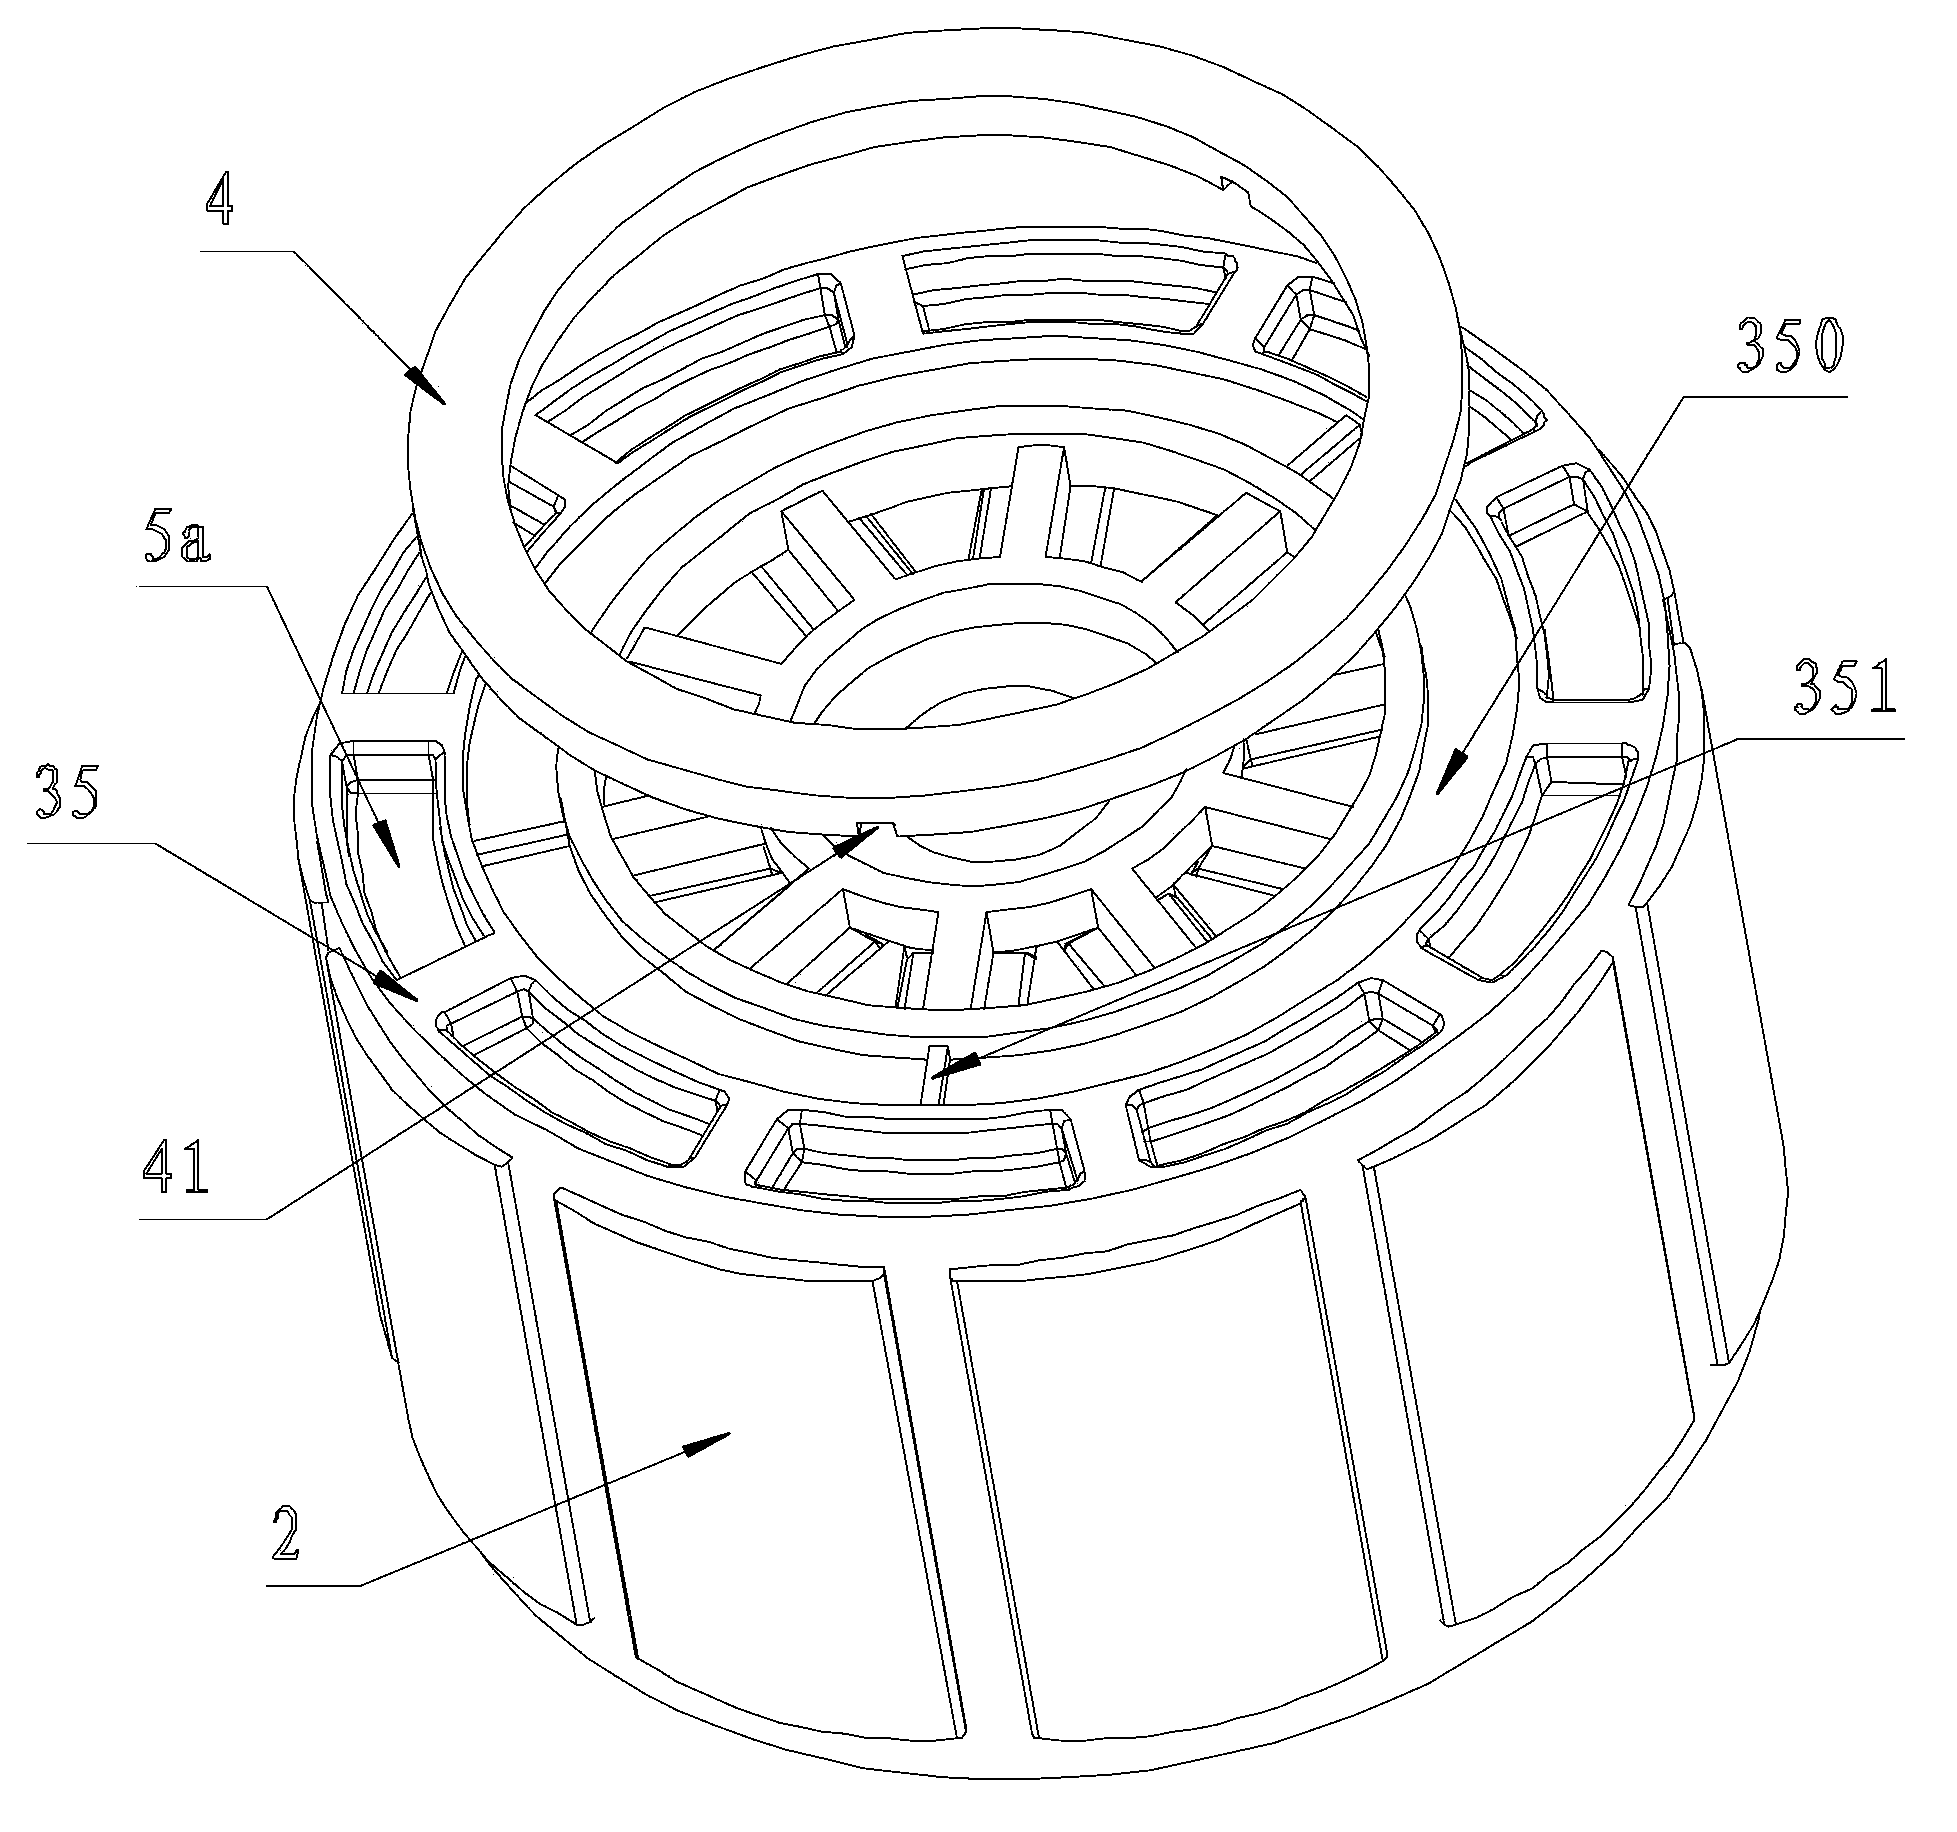 Motor rotor assembly